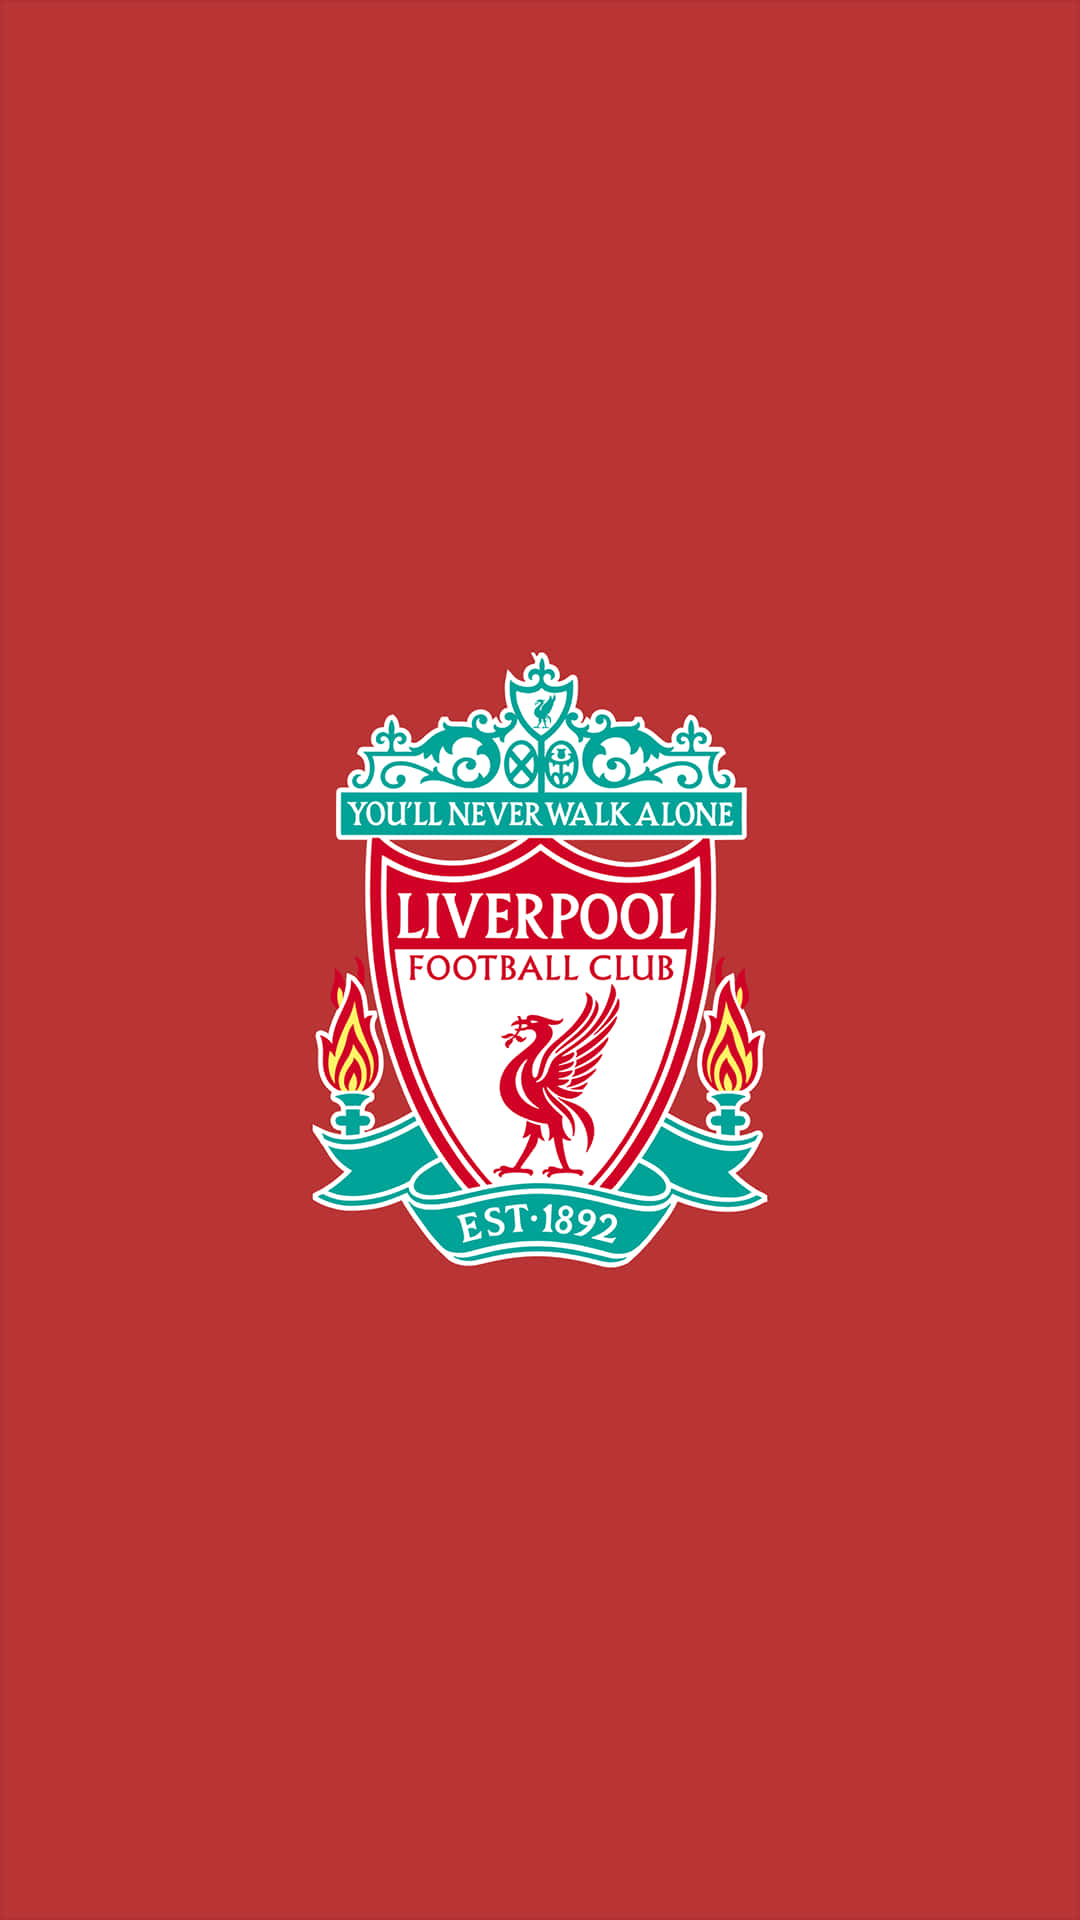 Zeigestolz Deine Liebe Zu Liverpool F.c. Auch Unterwegs! Wallpaper